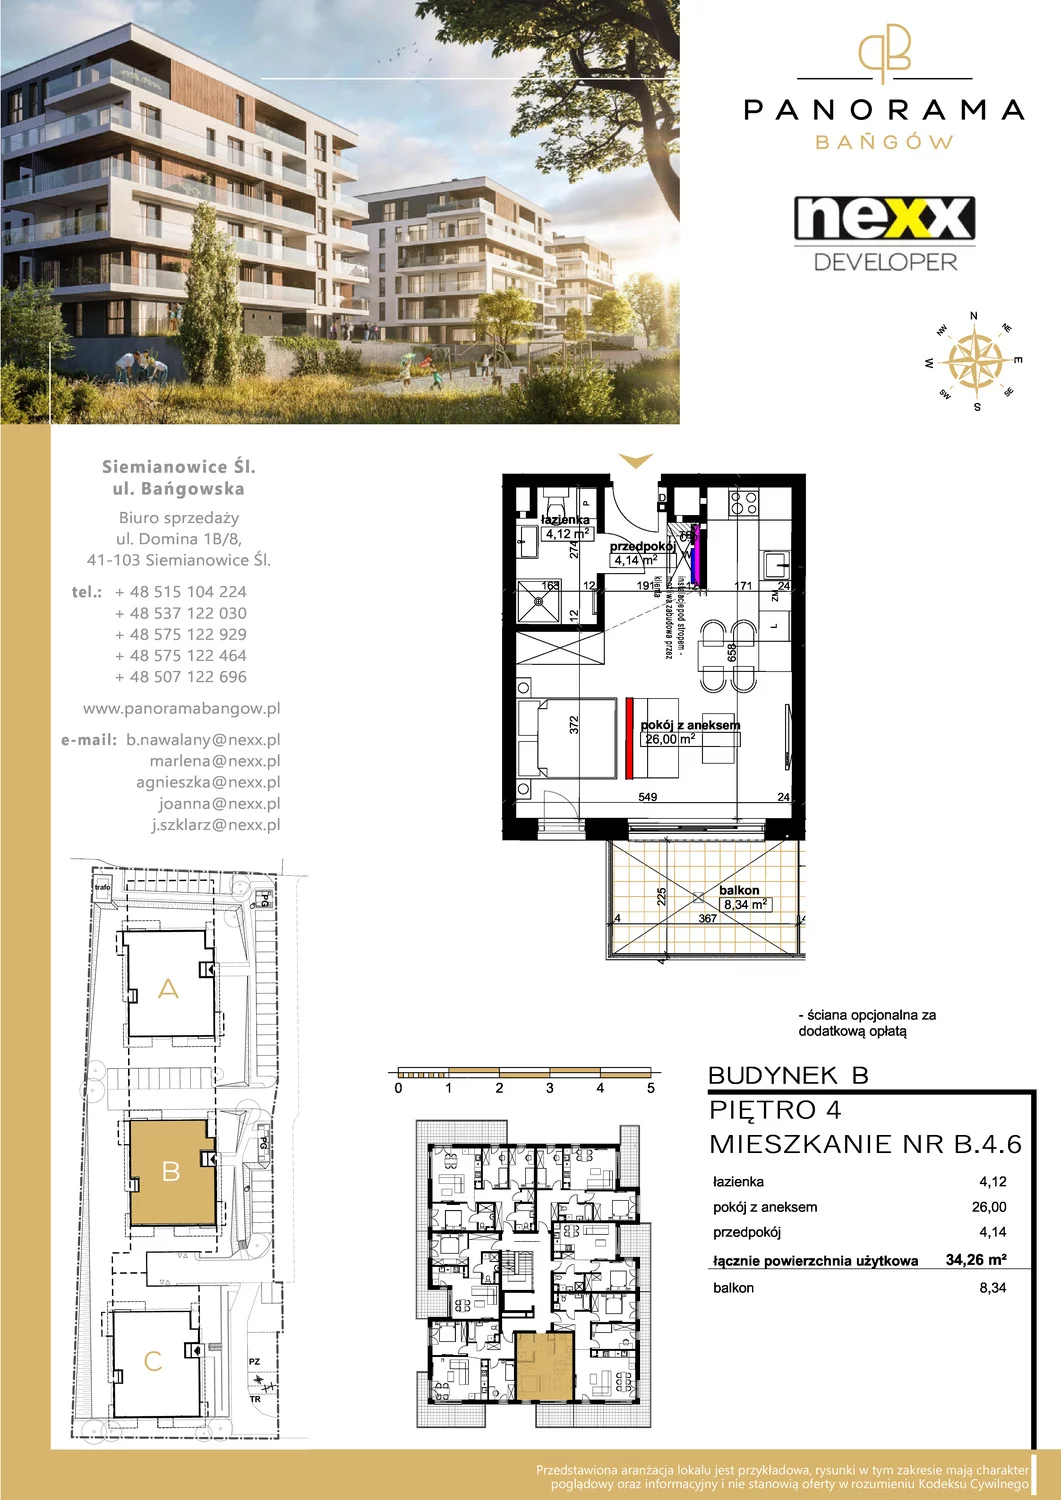 Mieszkanie 34,30 m², piętro 4, oferta nr B 4.6, Panorama Bańgów, Siemianowice Śląskie, Bańgów, ul. Bańgowska